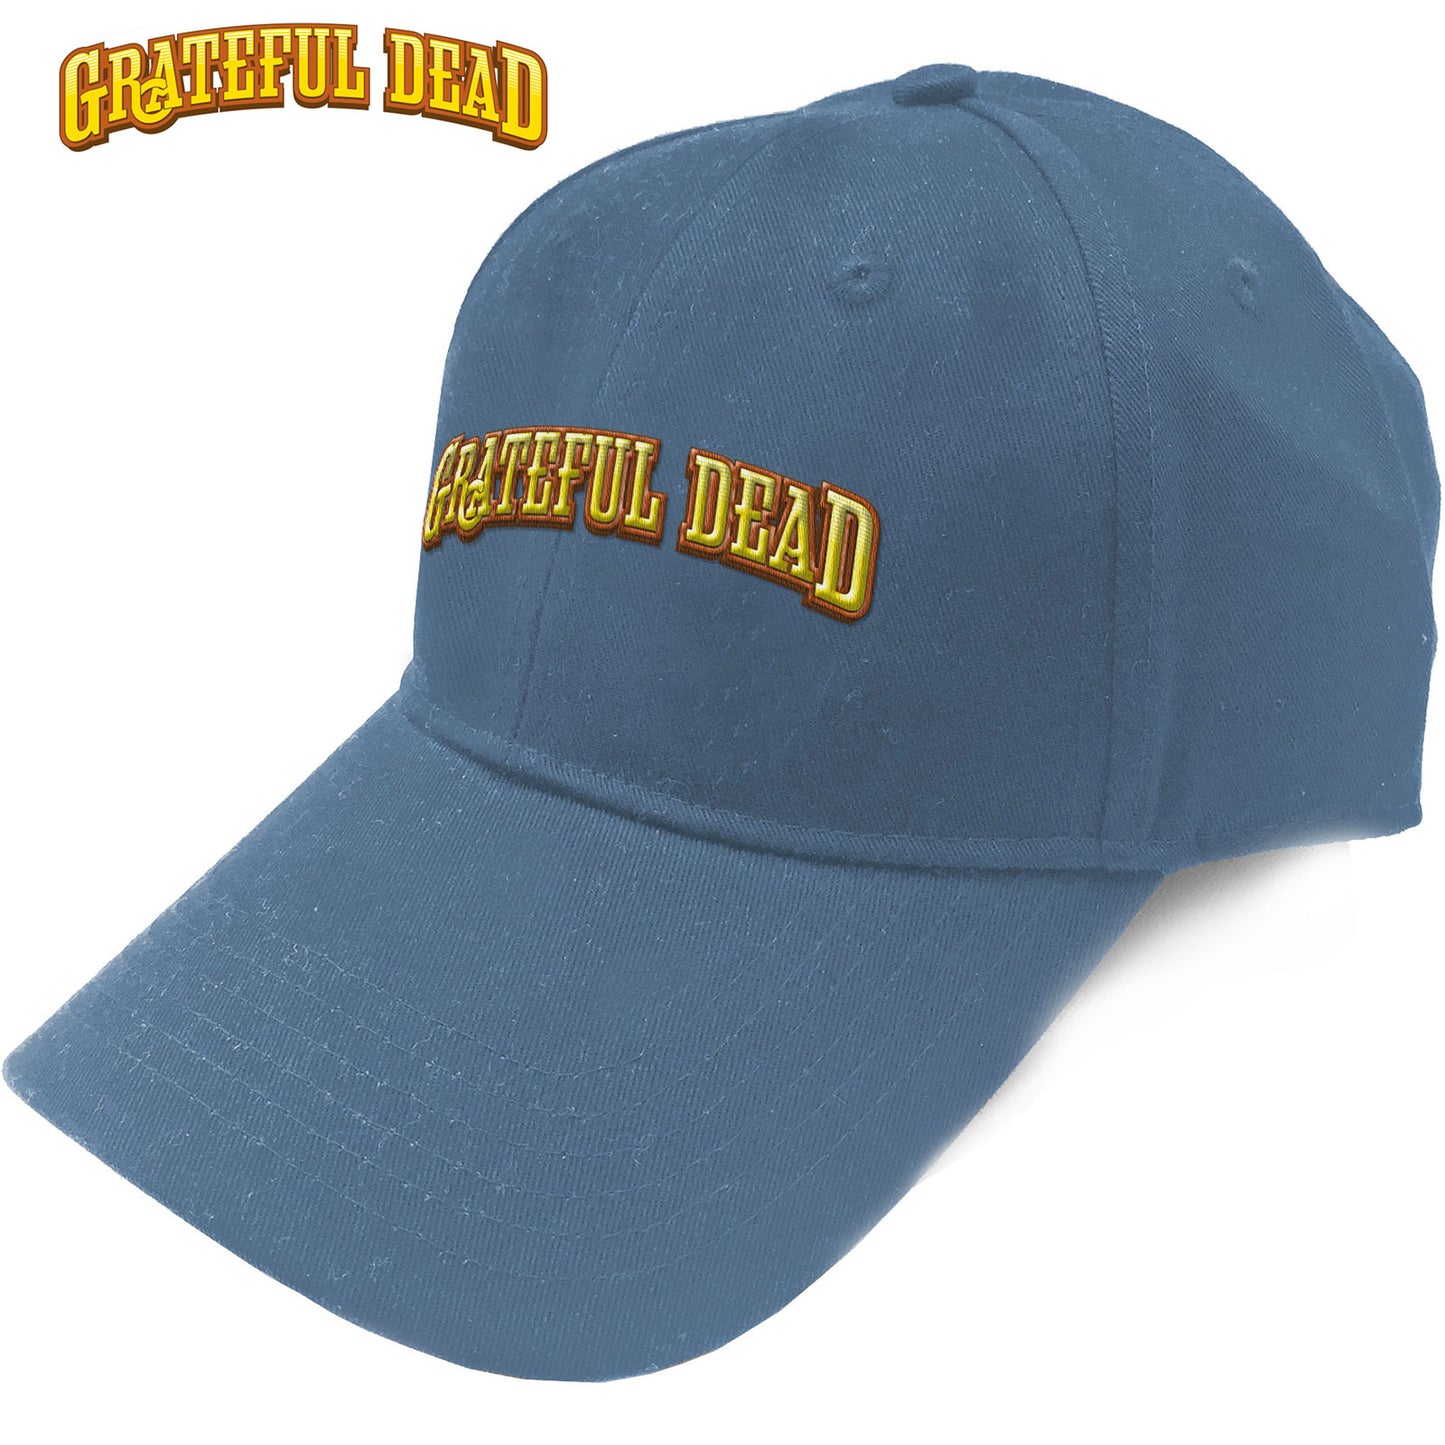 Grateful Dead Baseball Cap: Sunshine Daydream Logo